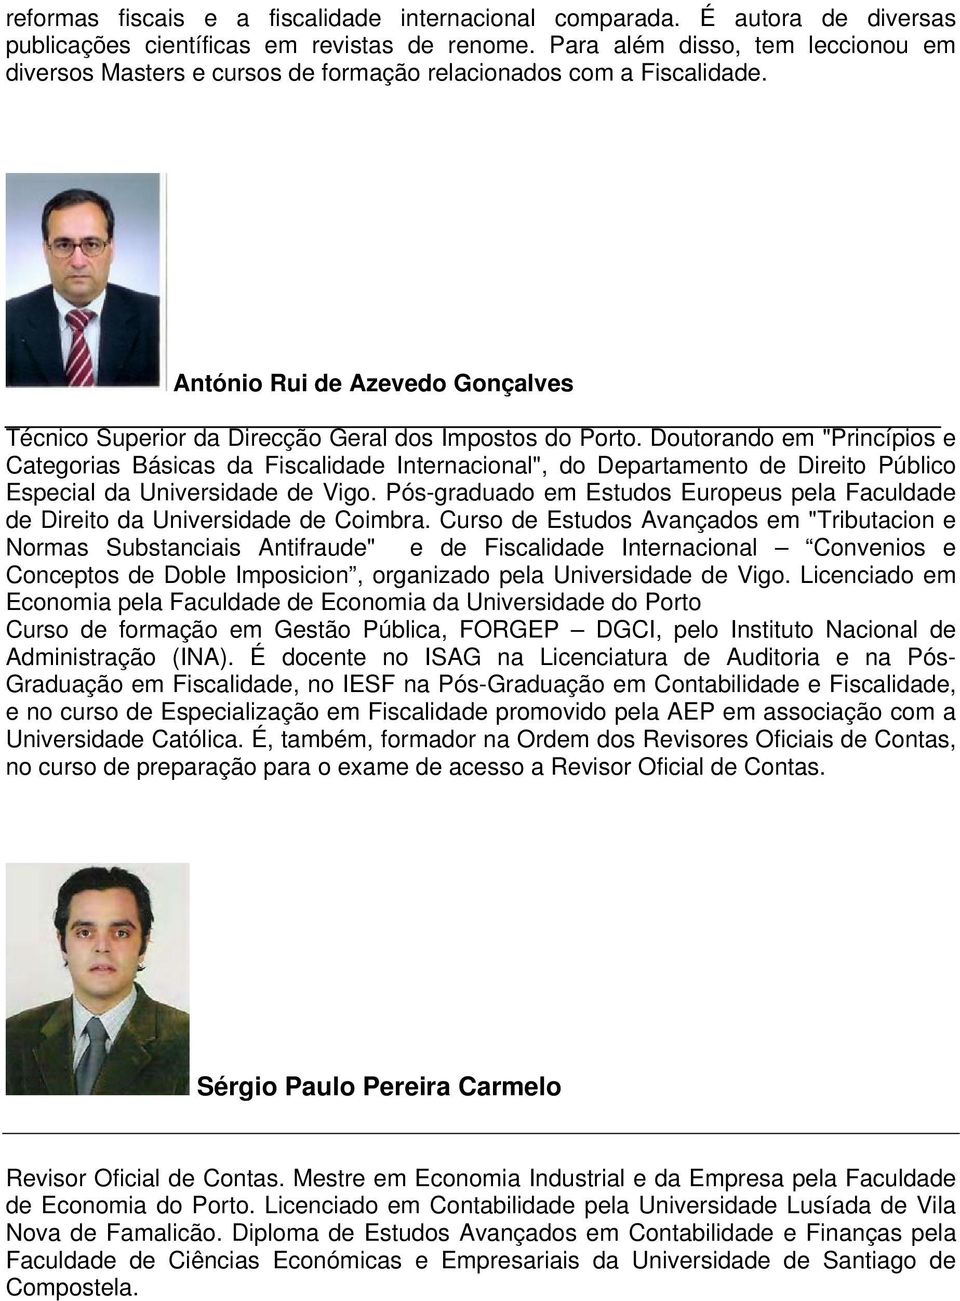 Doutorando em "Princípios e Categorias Básicas da Fiscalidade Internacional", do Departamento de Direito Público Especial da Universidade de Vigo.